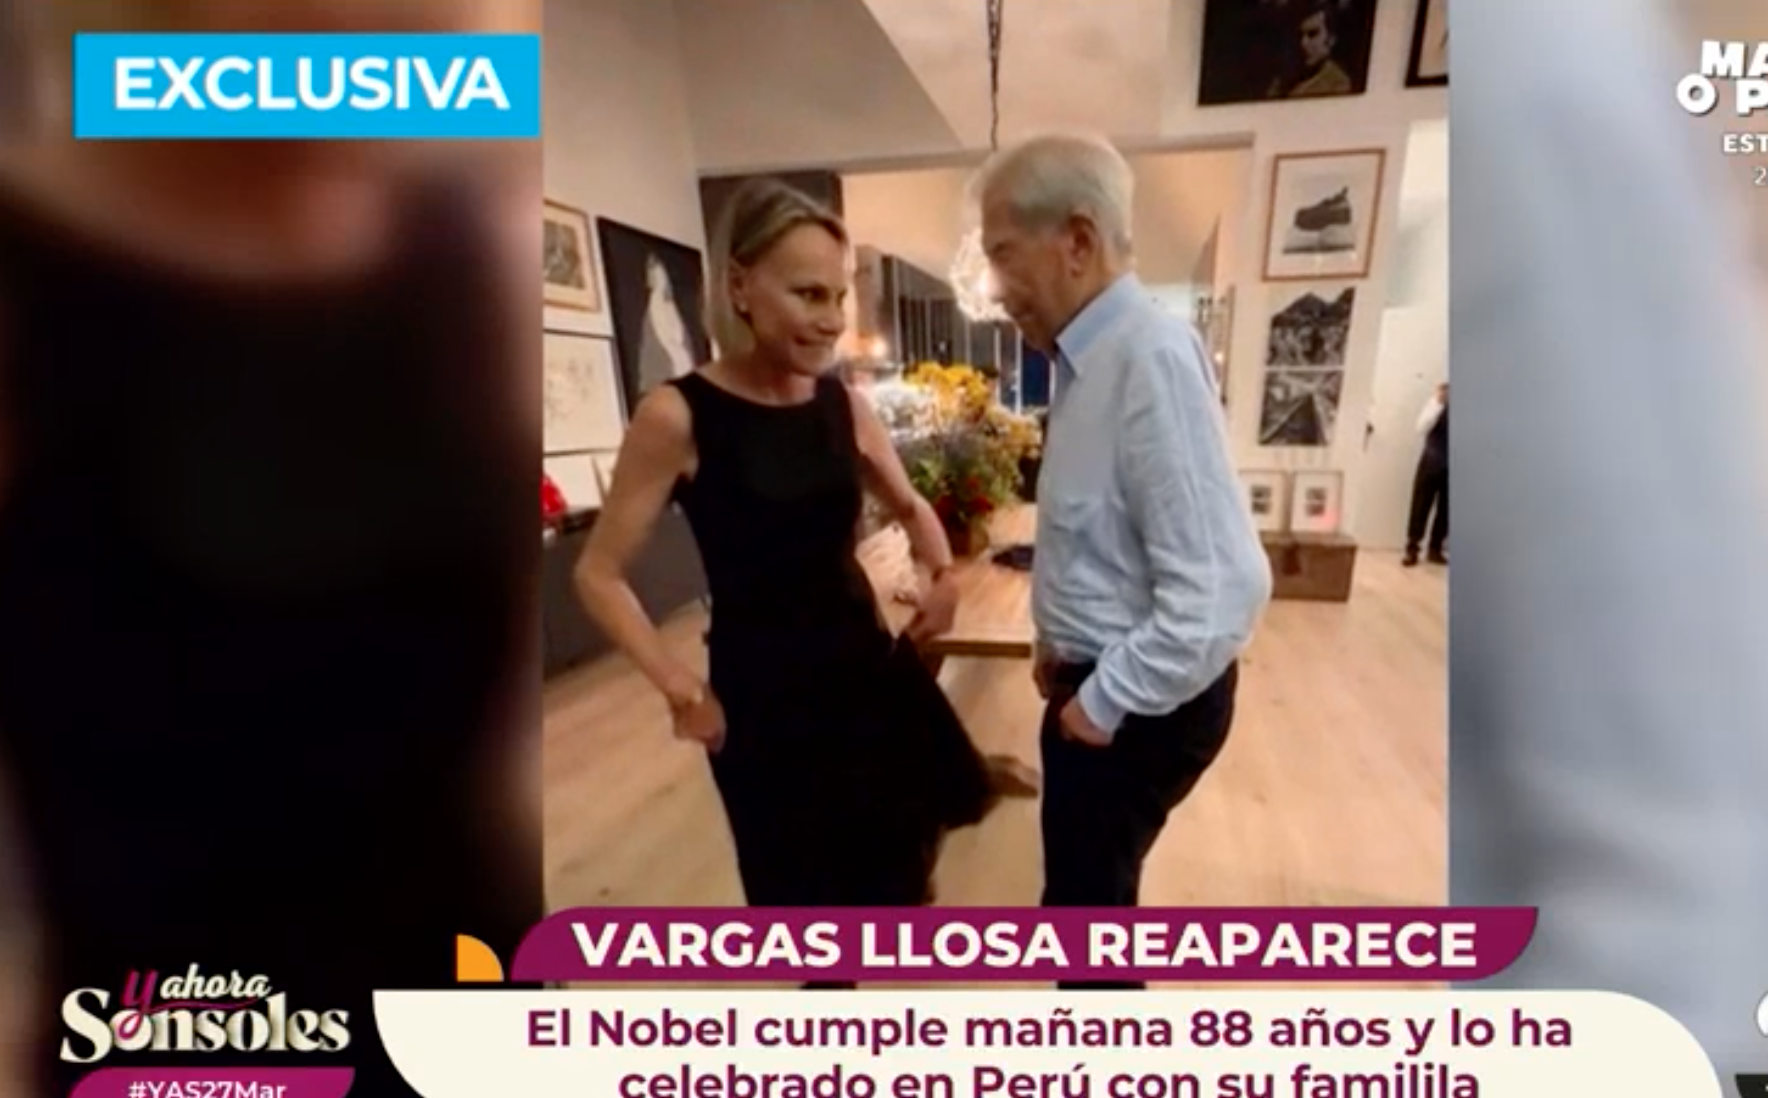 Así desmiente Mario Vargas Llosa los rumores de su maltrecha salud